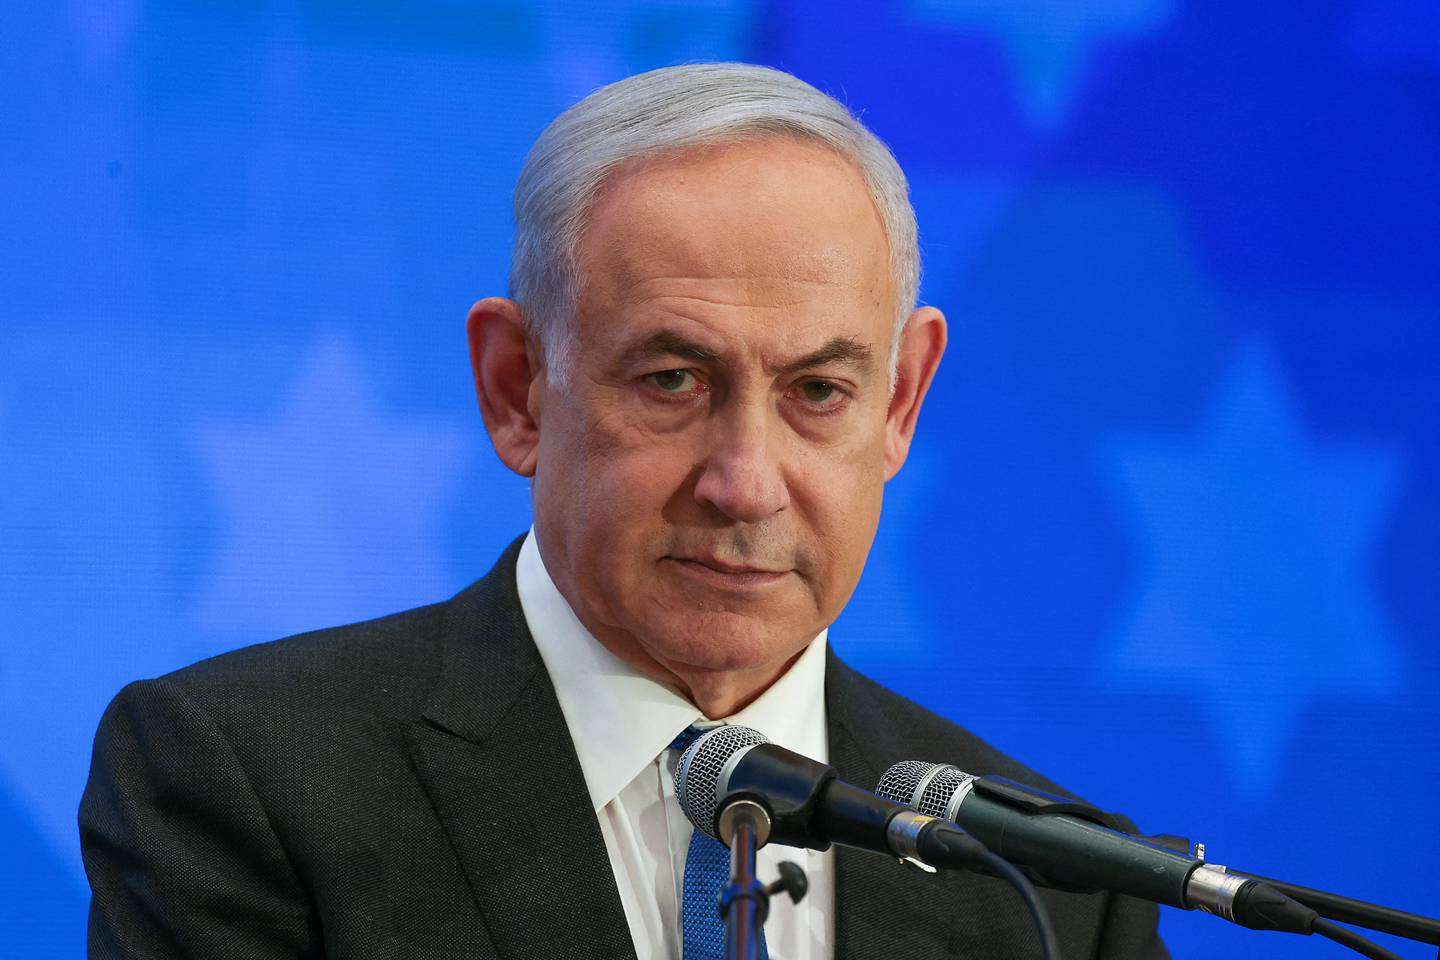 Statsminister Benjamin Netanyahu spiller svært høyt, skriver Lars West Johnsen.